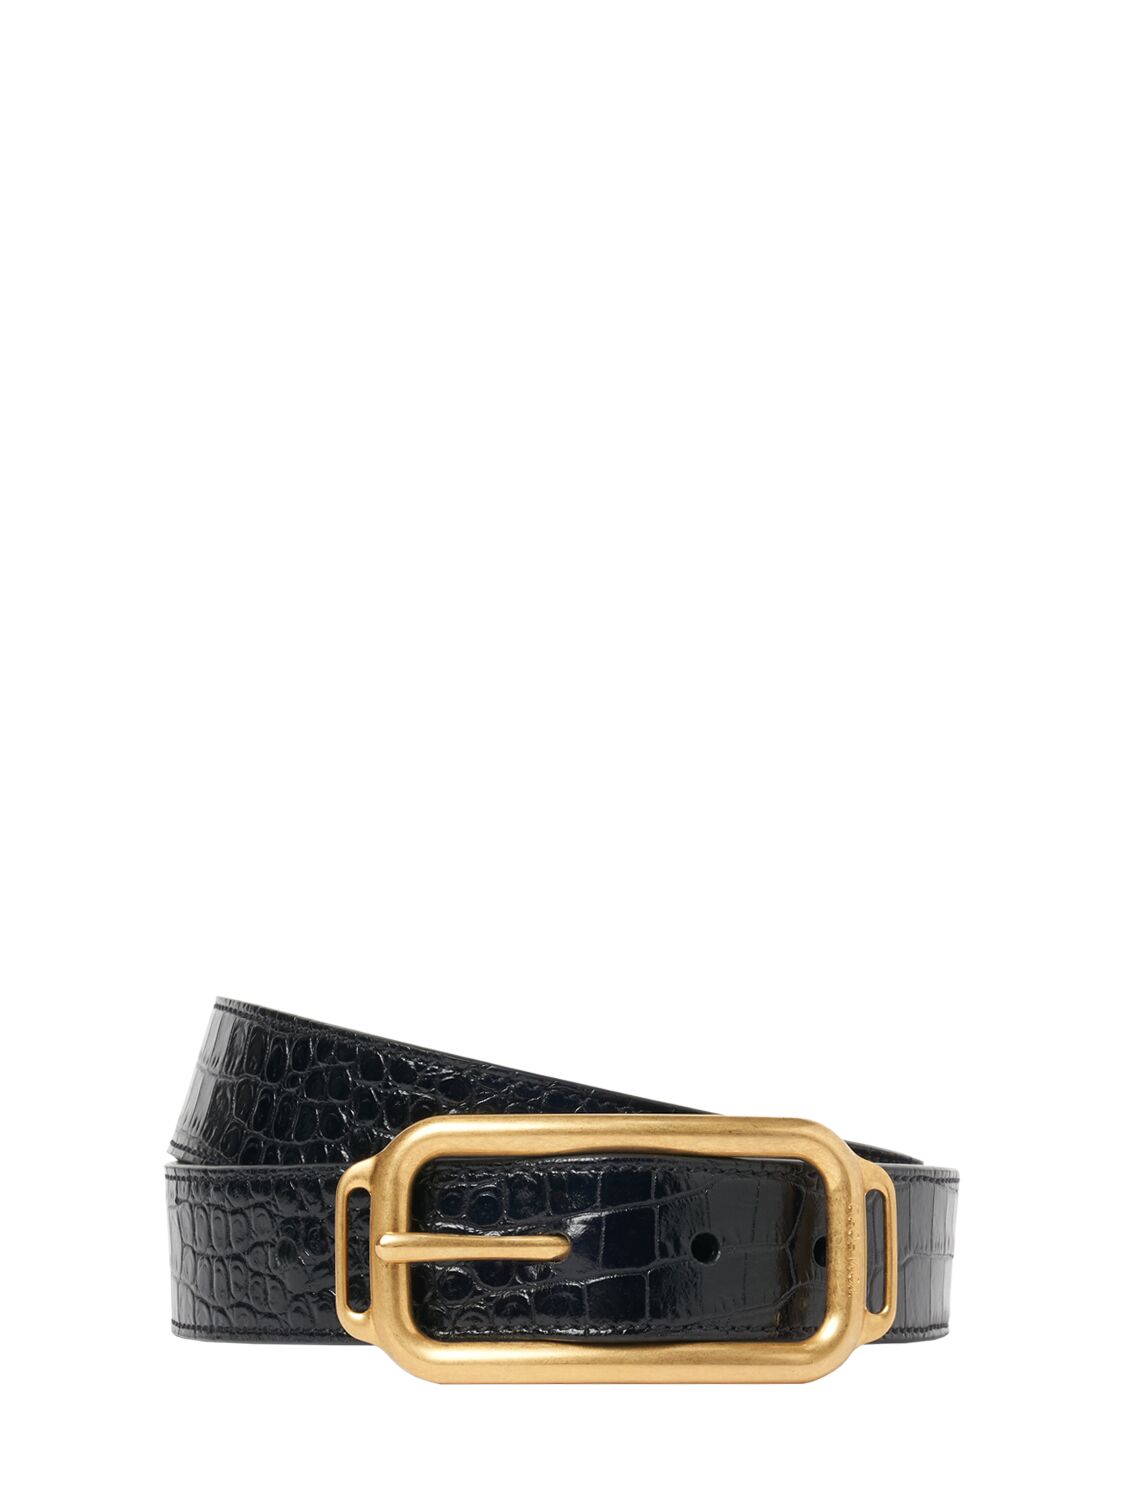 Tom Ford 3 Cm Croc Embossed Leather Belt In Black Gold